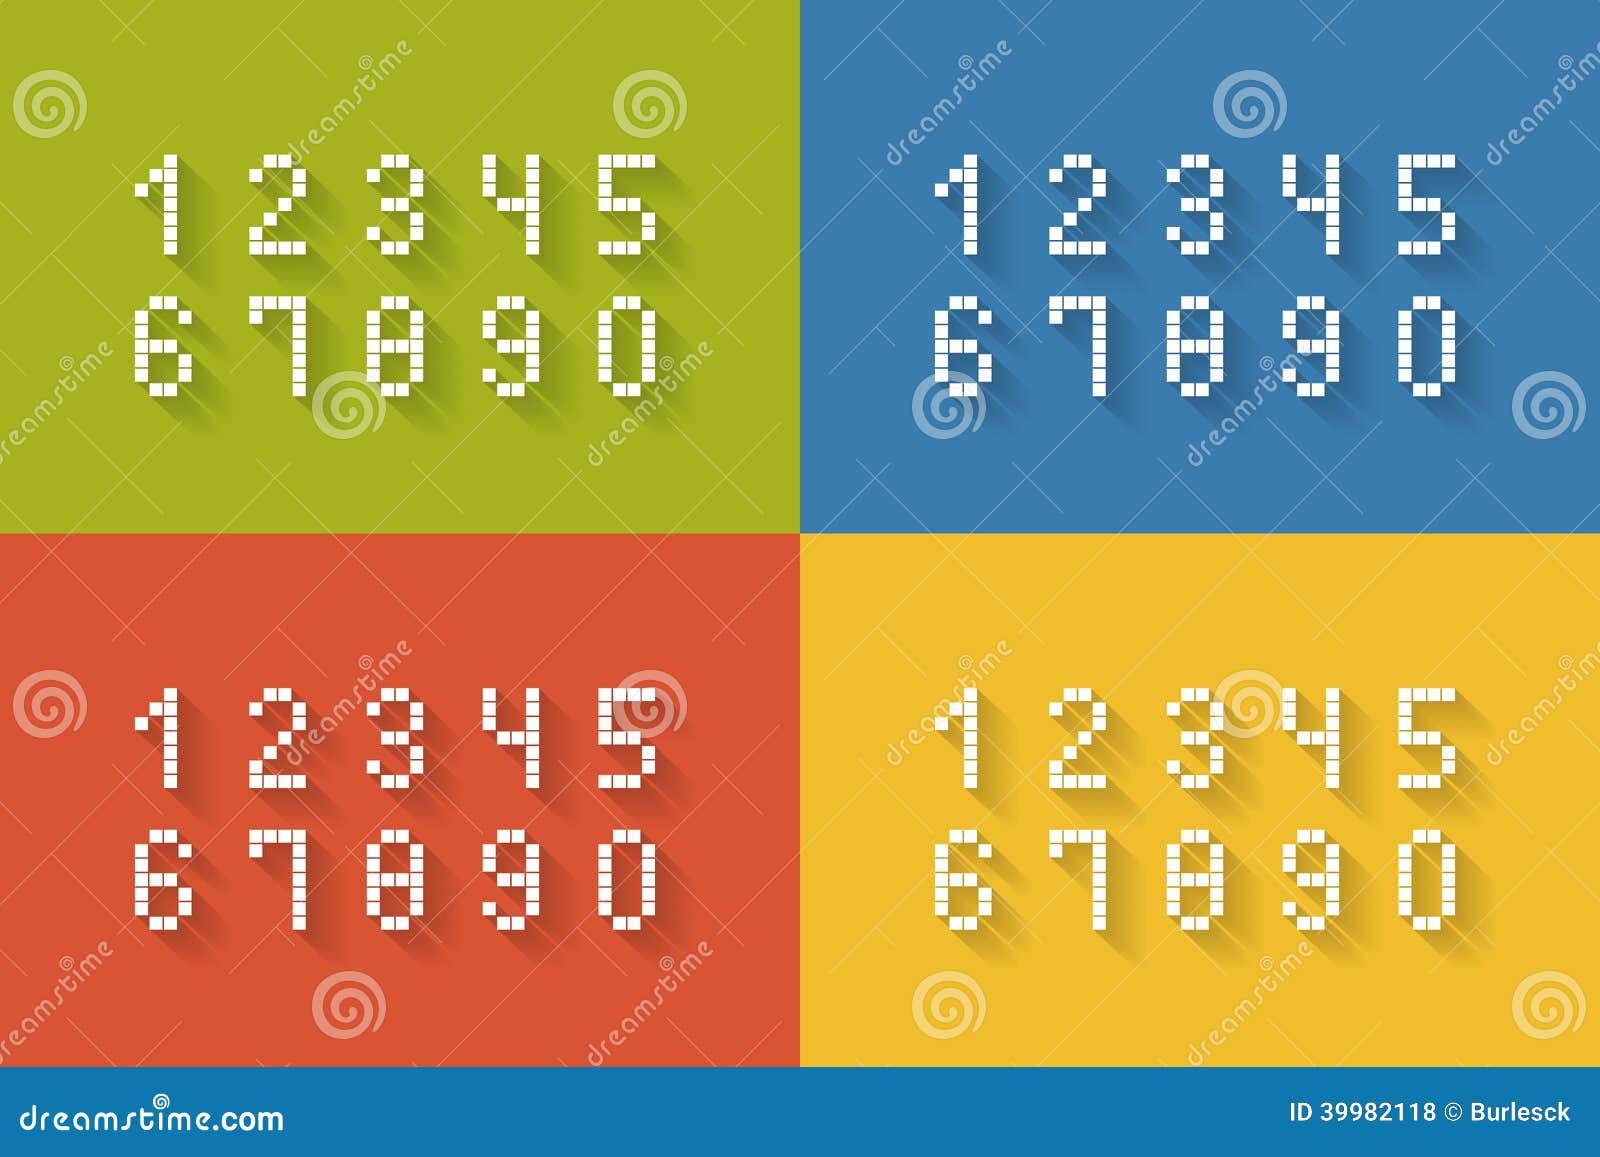 Satz flache Pixelzahlen. Satz des flachen Pixels nummeriert auf vier verschiedenen Farbhintergründen abschließen die Illustration mit null bis neun Vektoren